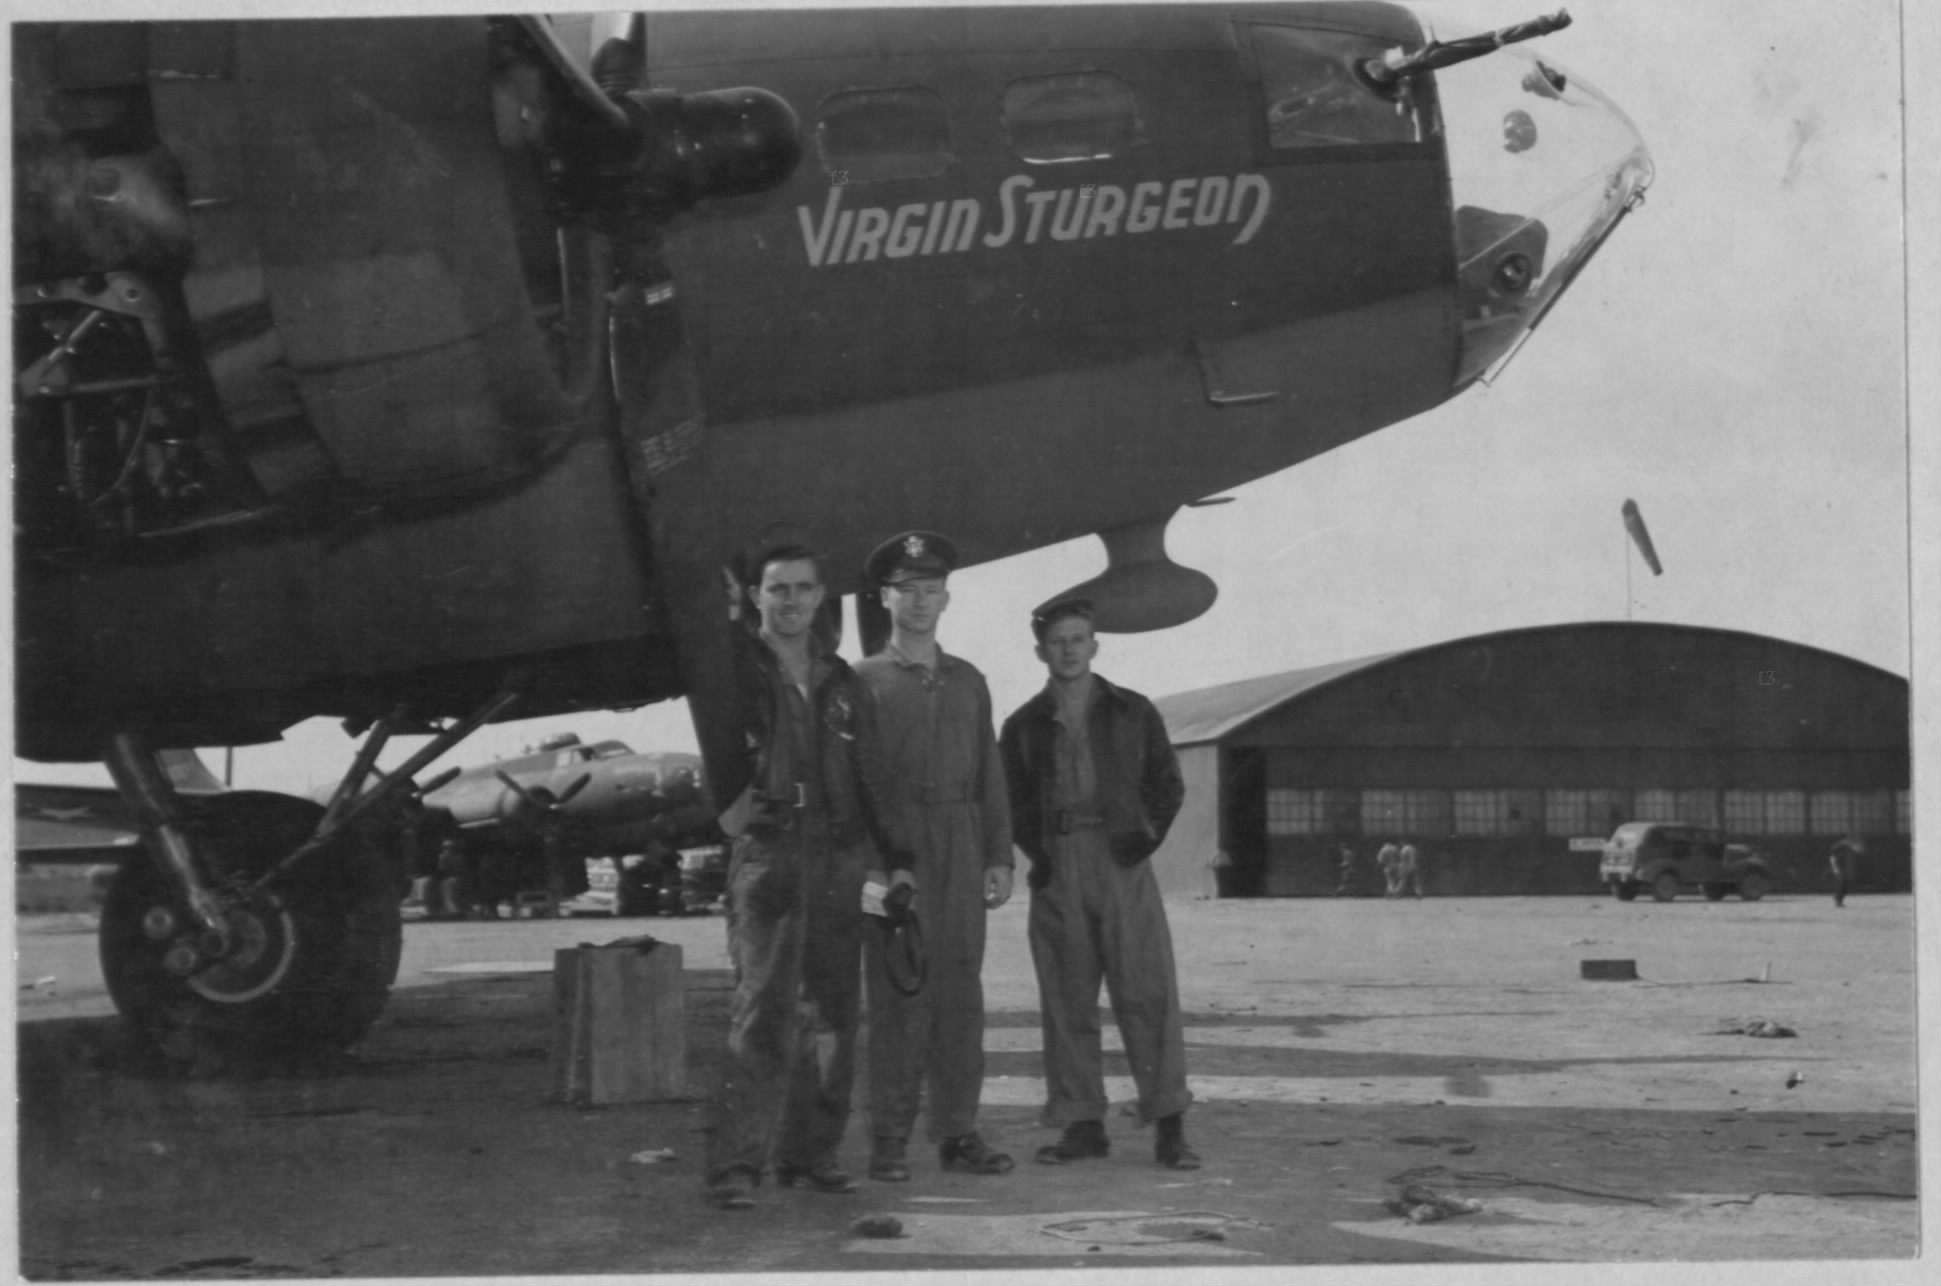 B-17 #41-24419 / Virgin Sturgeon aka Honey Chile II